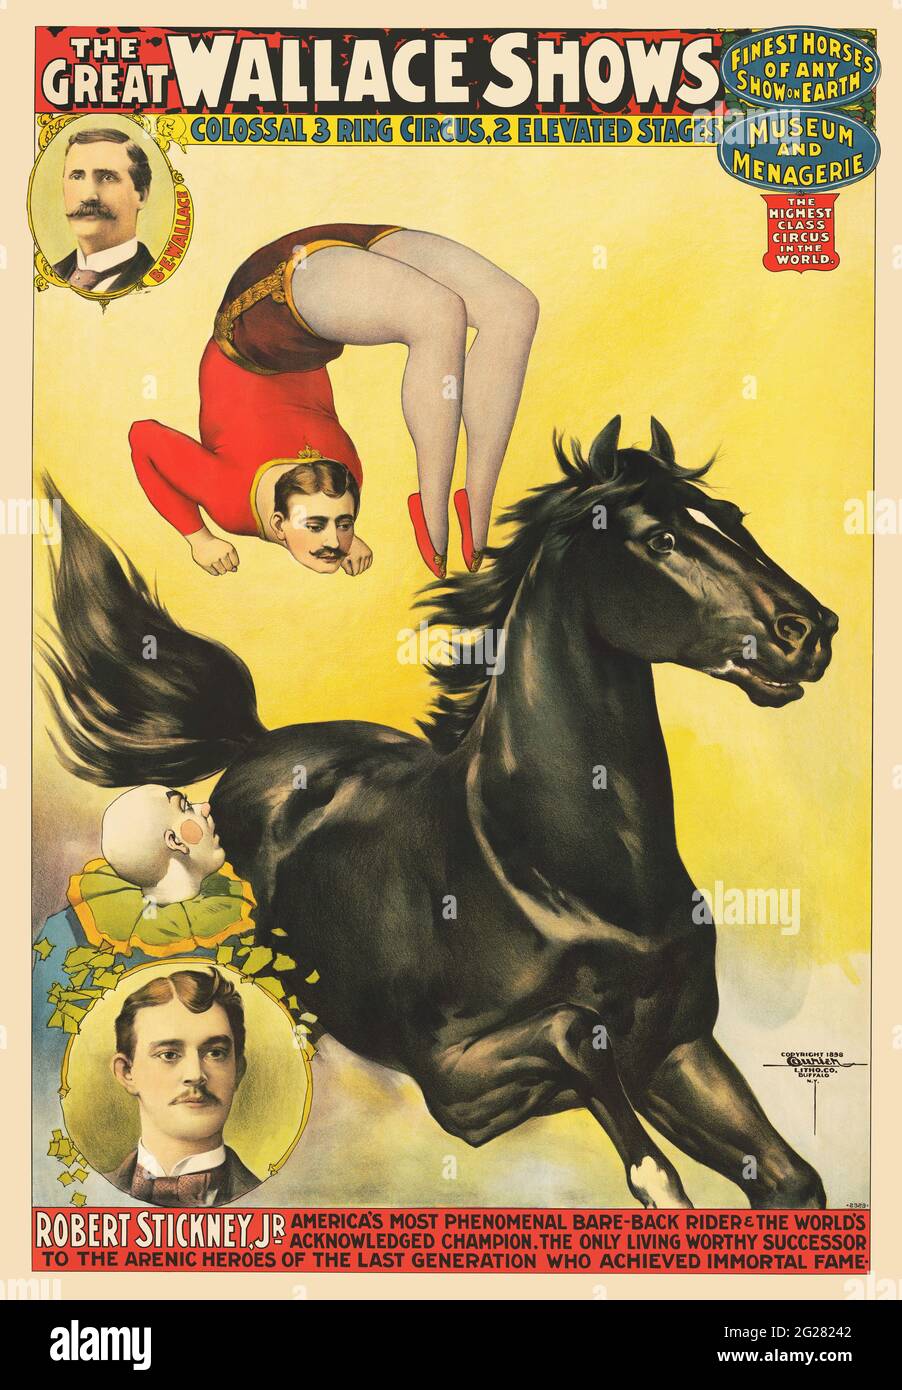 Klassisches Zirkusposter für die Great Wallace Show, das einen akrobaten zeigt, der einen Rückwärtssalto auf einem galoppierenden Pferd vorführt. Stockfoto